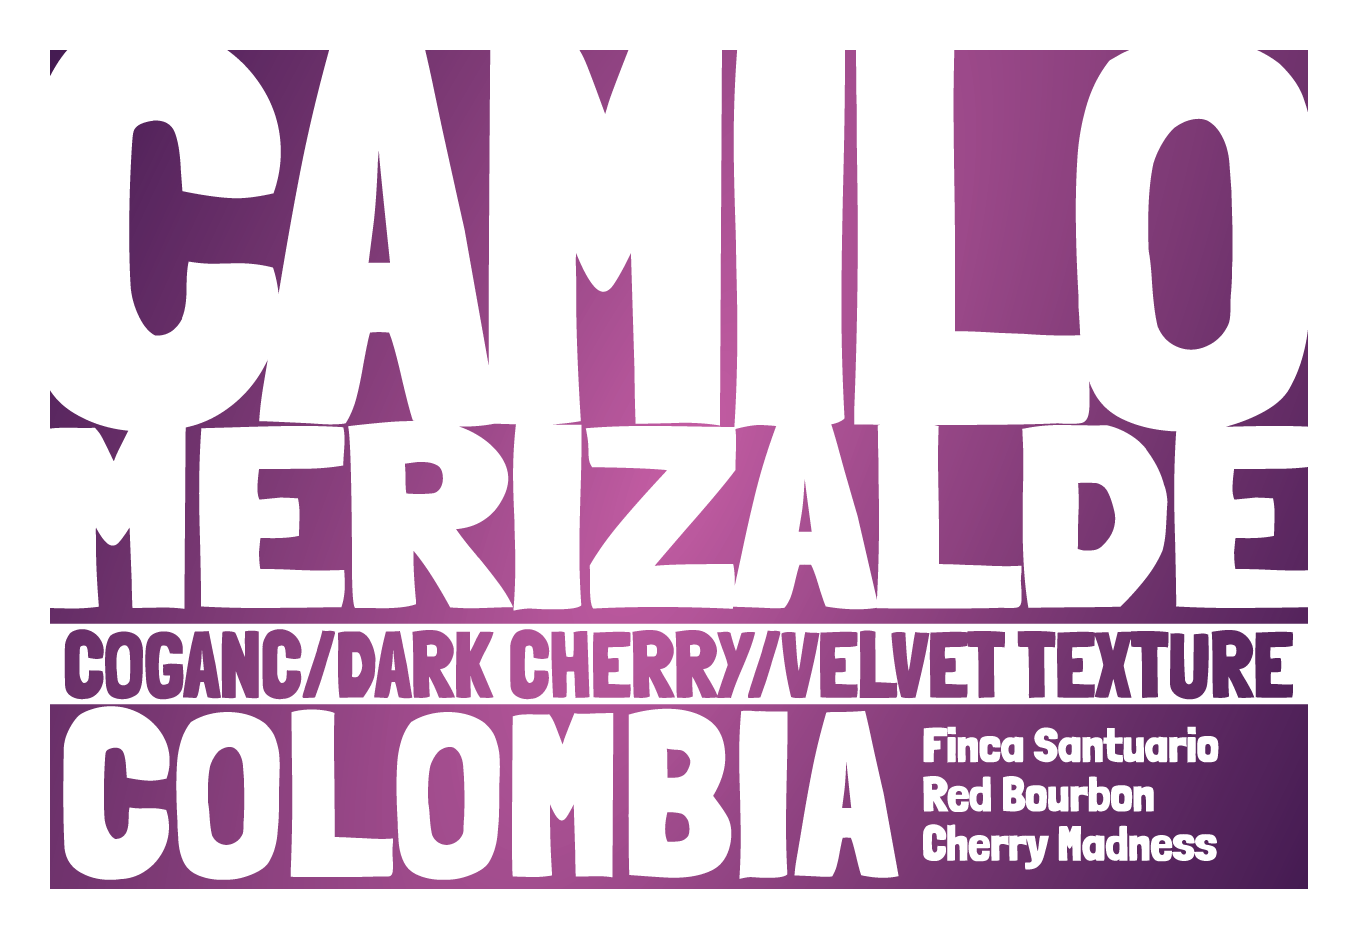 Colombia - Finca Santuario - Cherry Madness